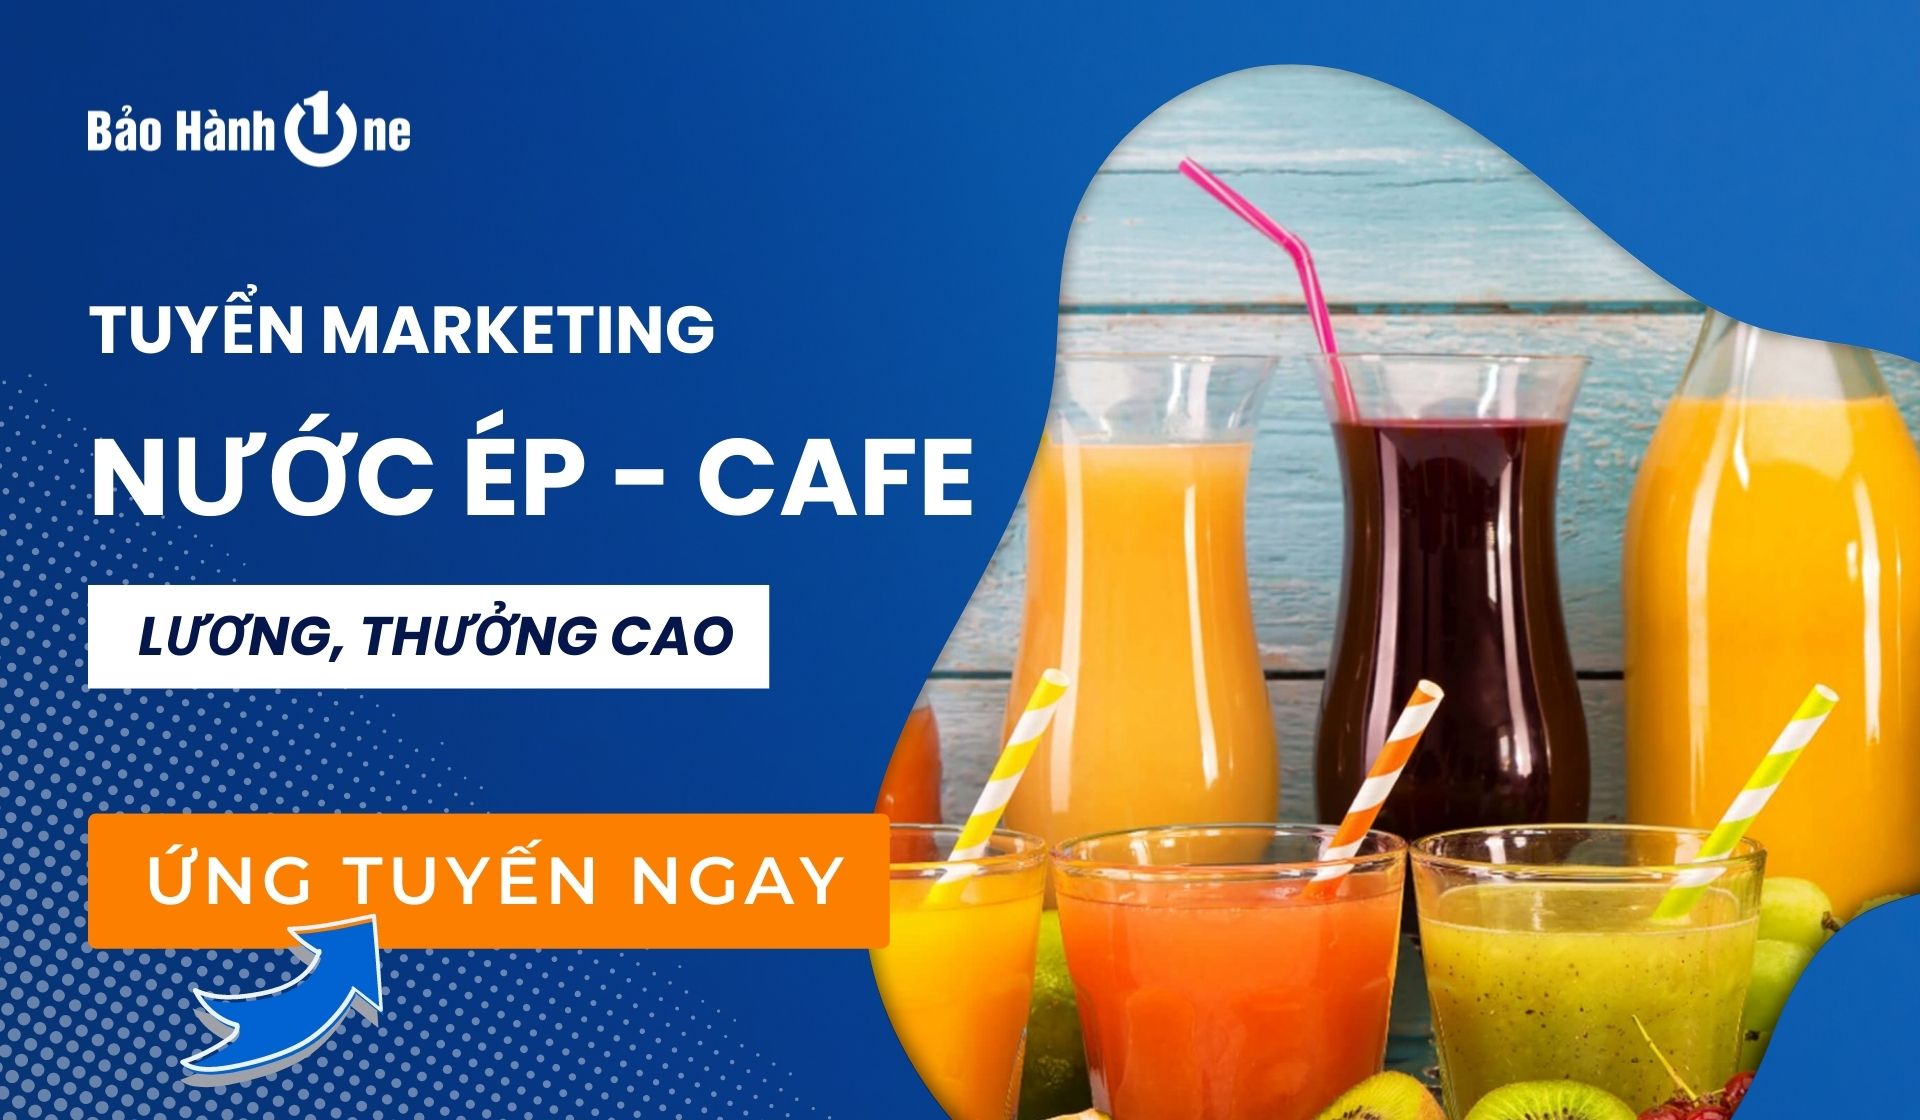 Tuyển dụng Chuyên Viên Marketing Nước Ép - Cafe tại Hồ Chí Minh